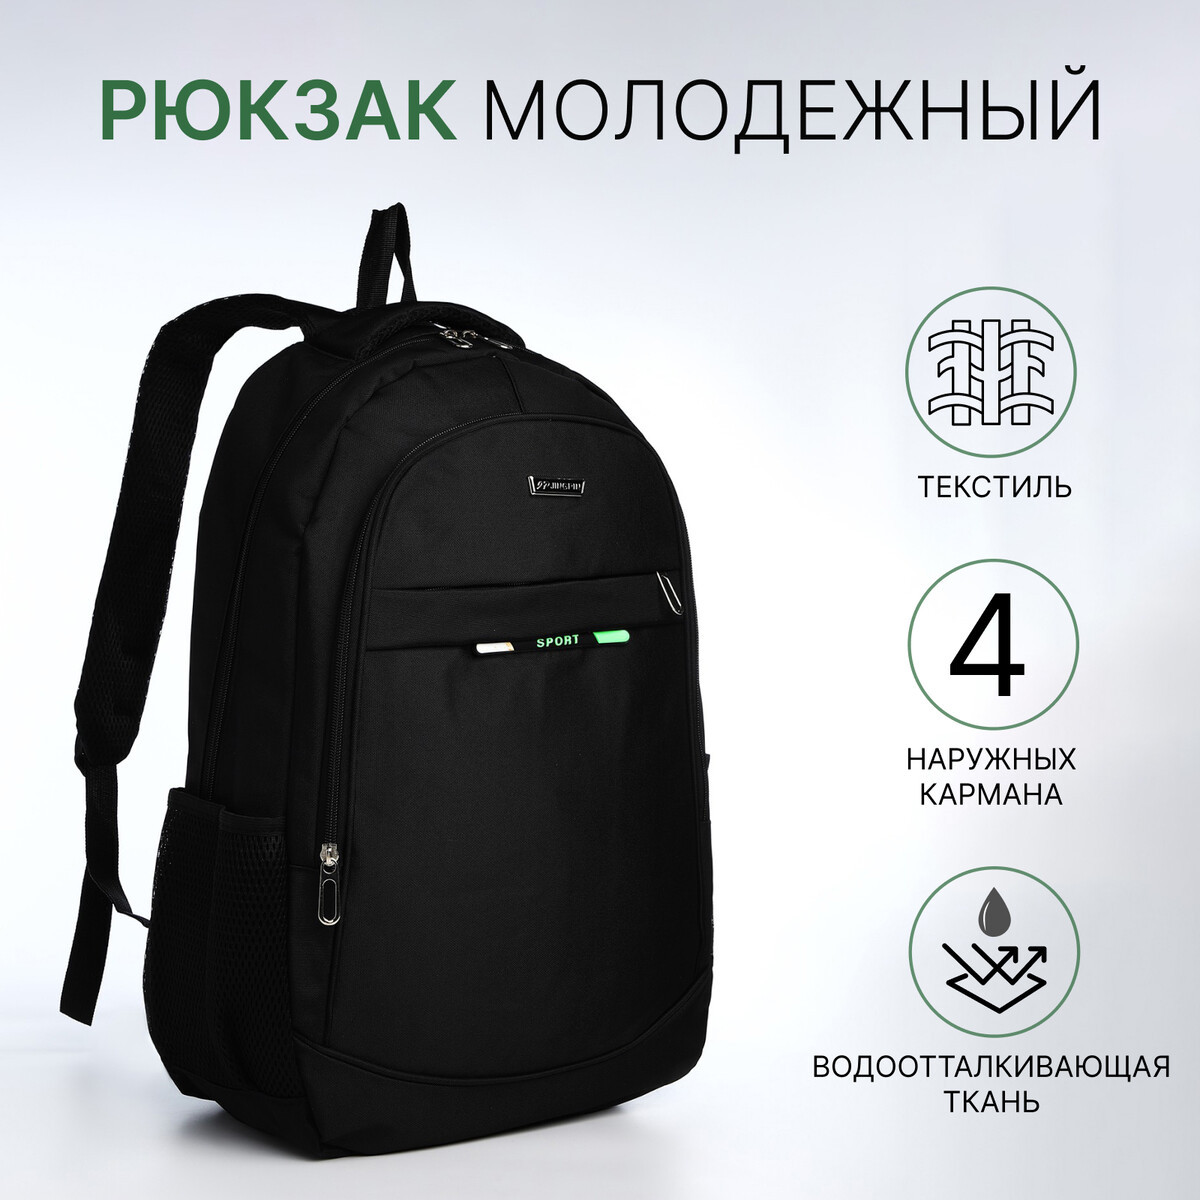 Рюкзак молодежный из текстиля на молнии, 4 кармана, цвет черный/зеленый